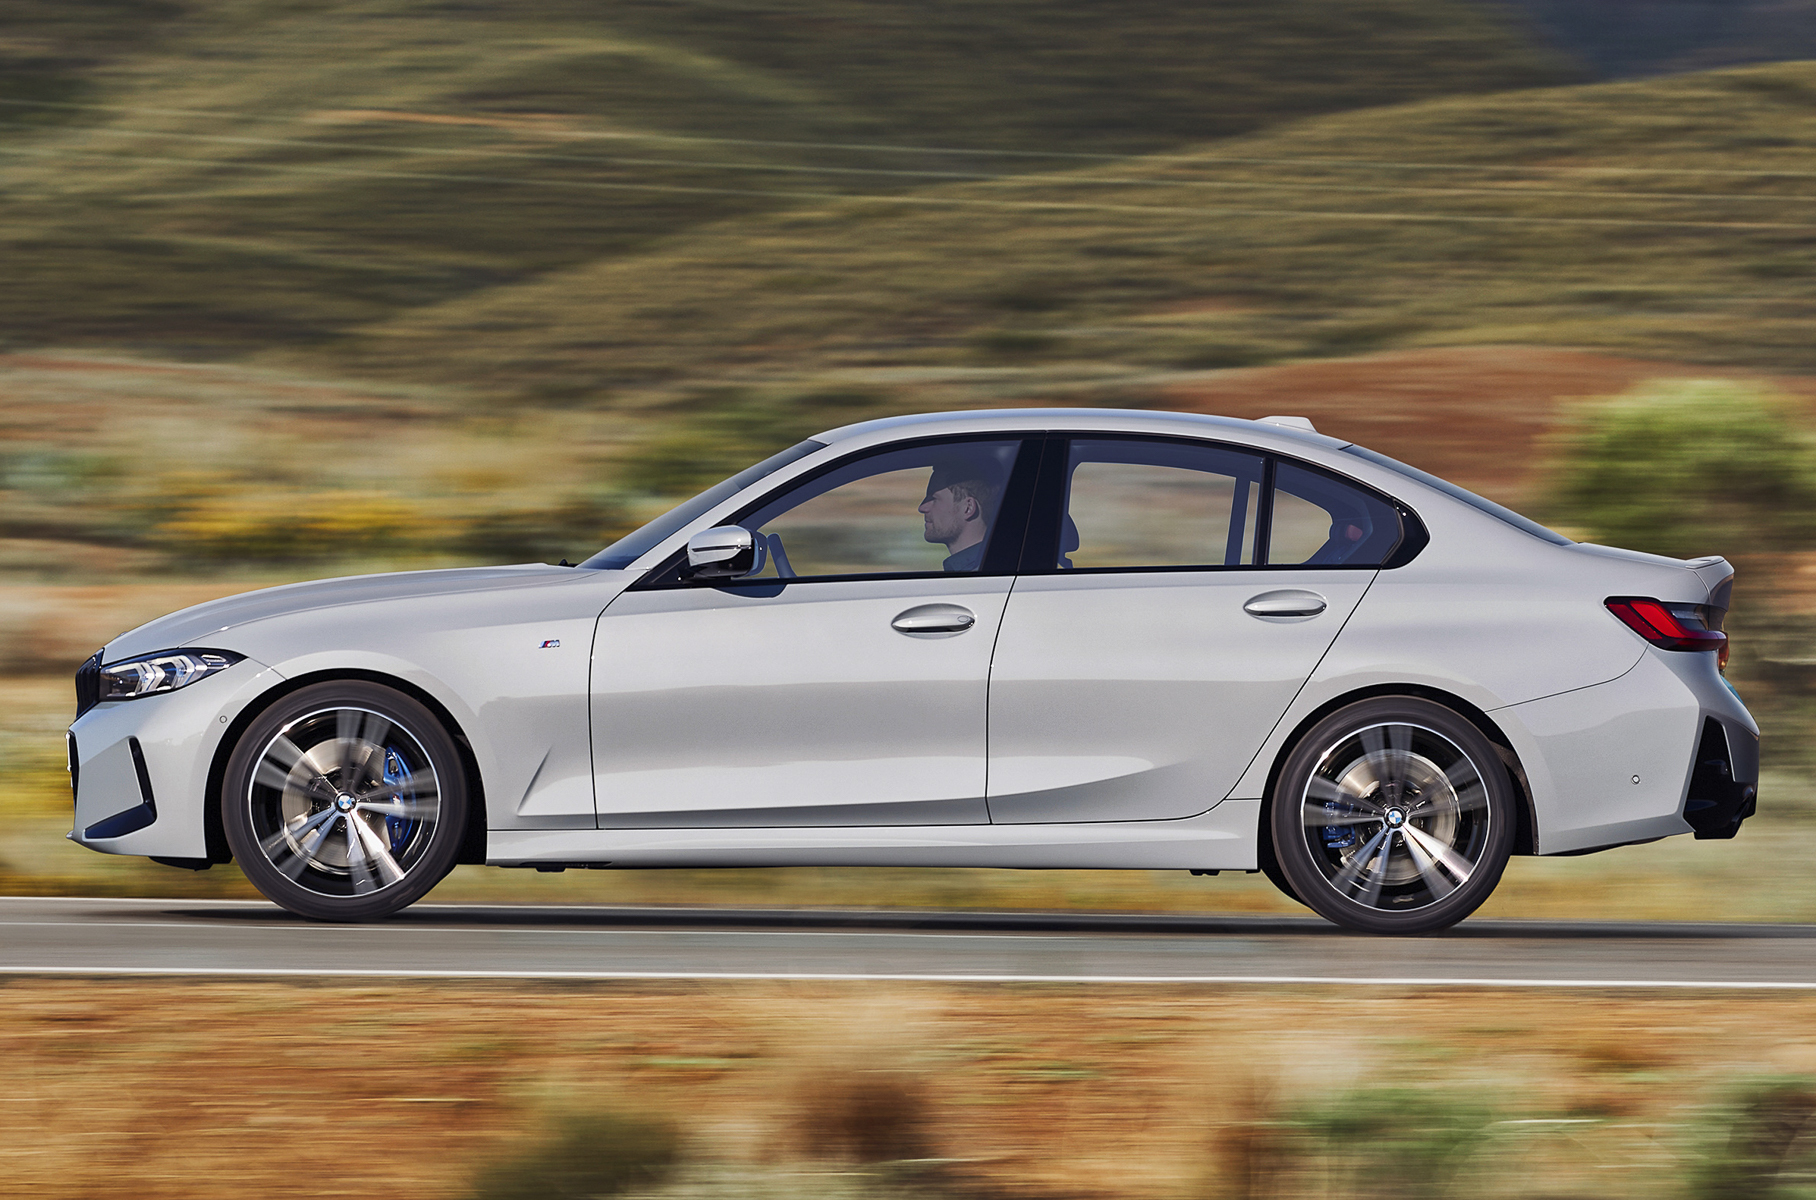 BMW 3 Series (седьмое поколение, 2018 год) Длина/ширина/высота: 4713 мм/1827 мм/1444 мм